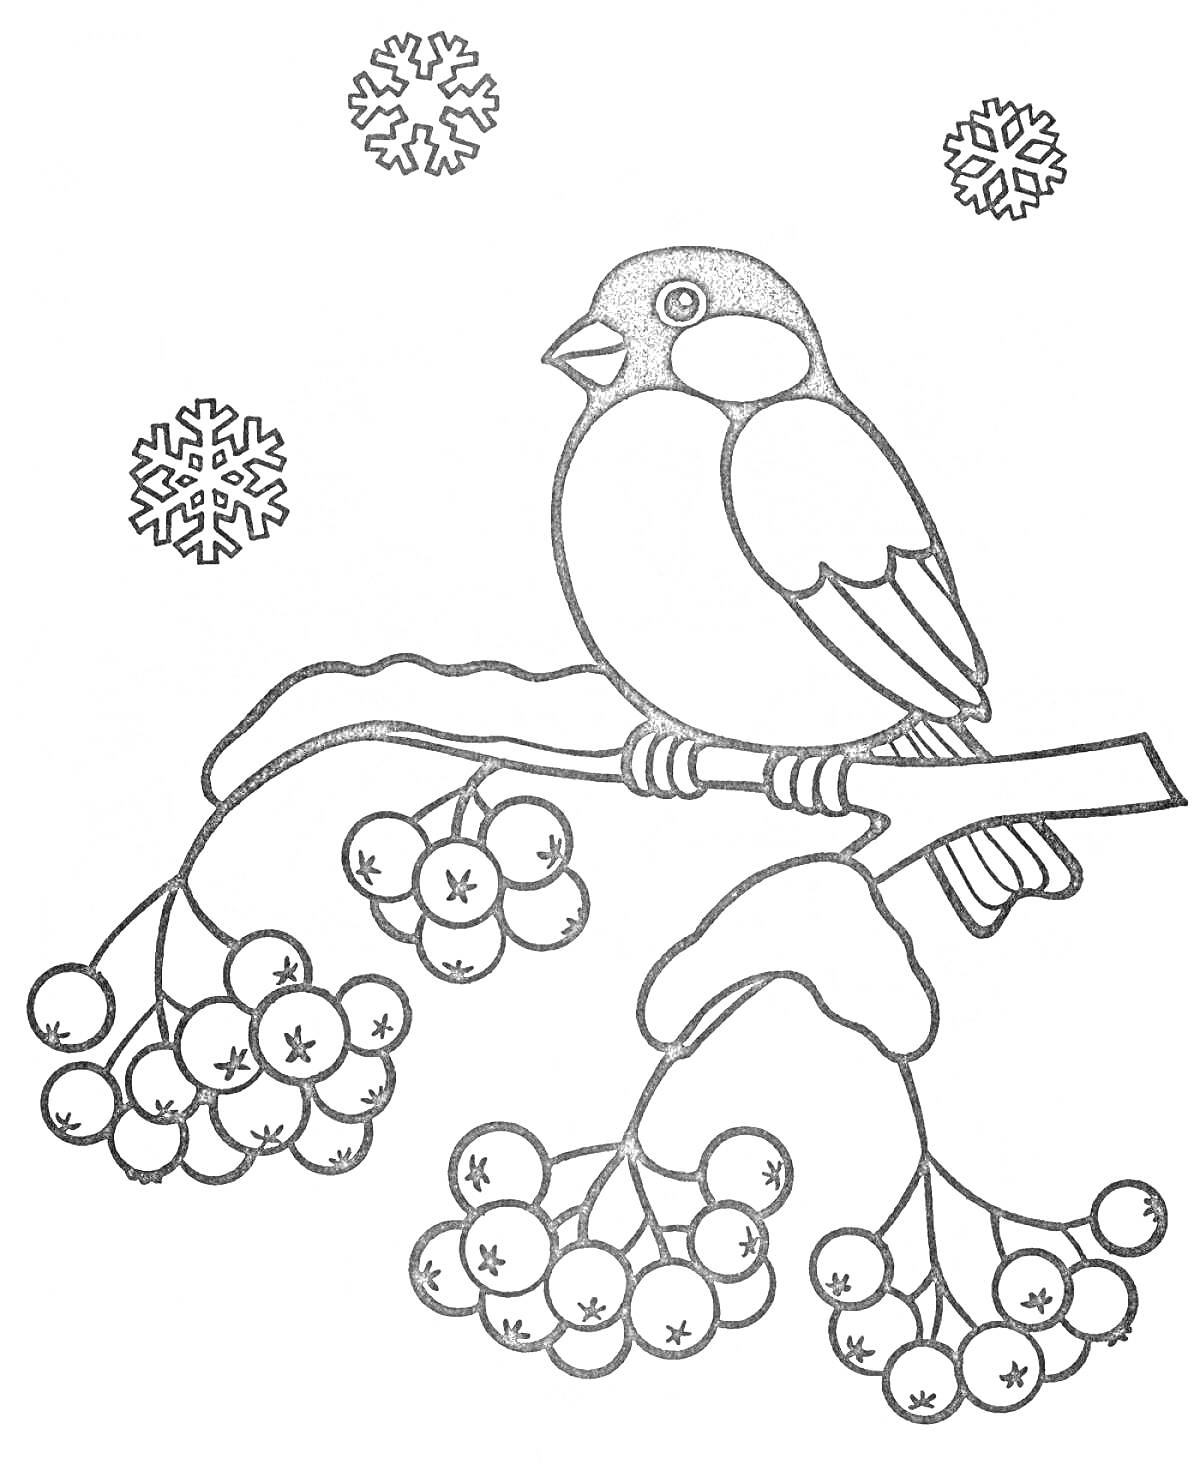 Раскраска Птица на ветке рябины зимой с падающими снежинками